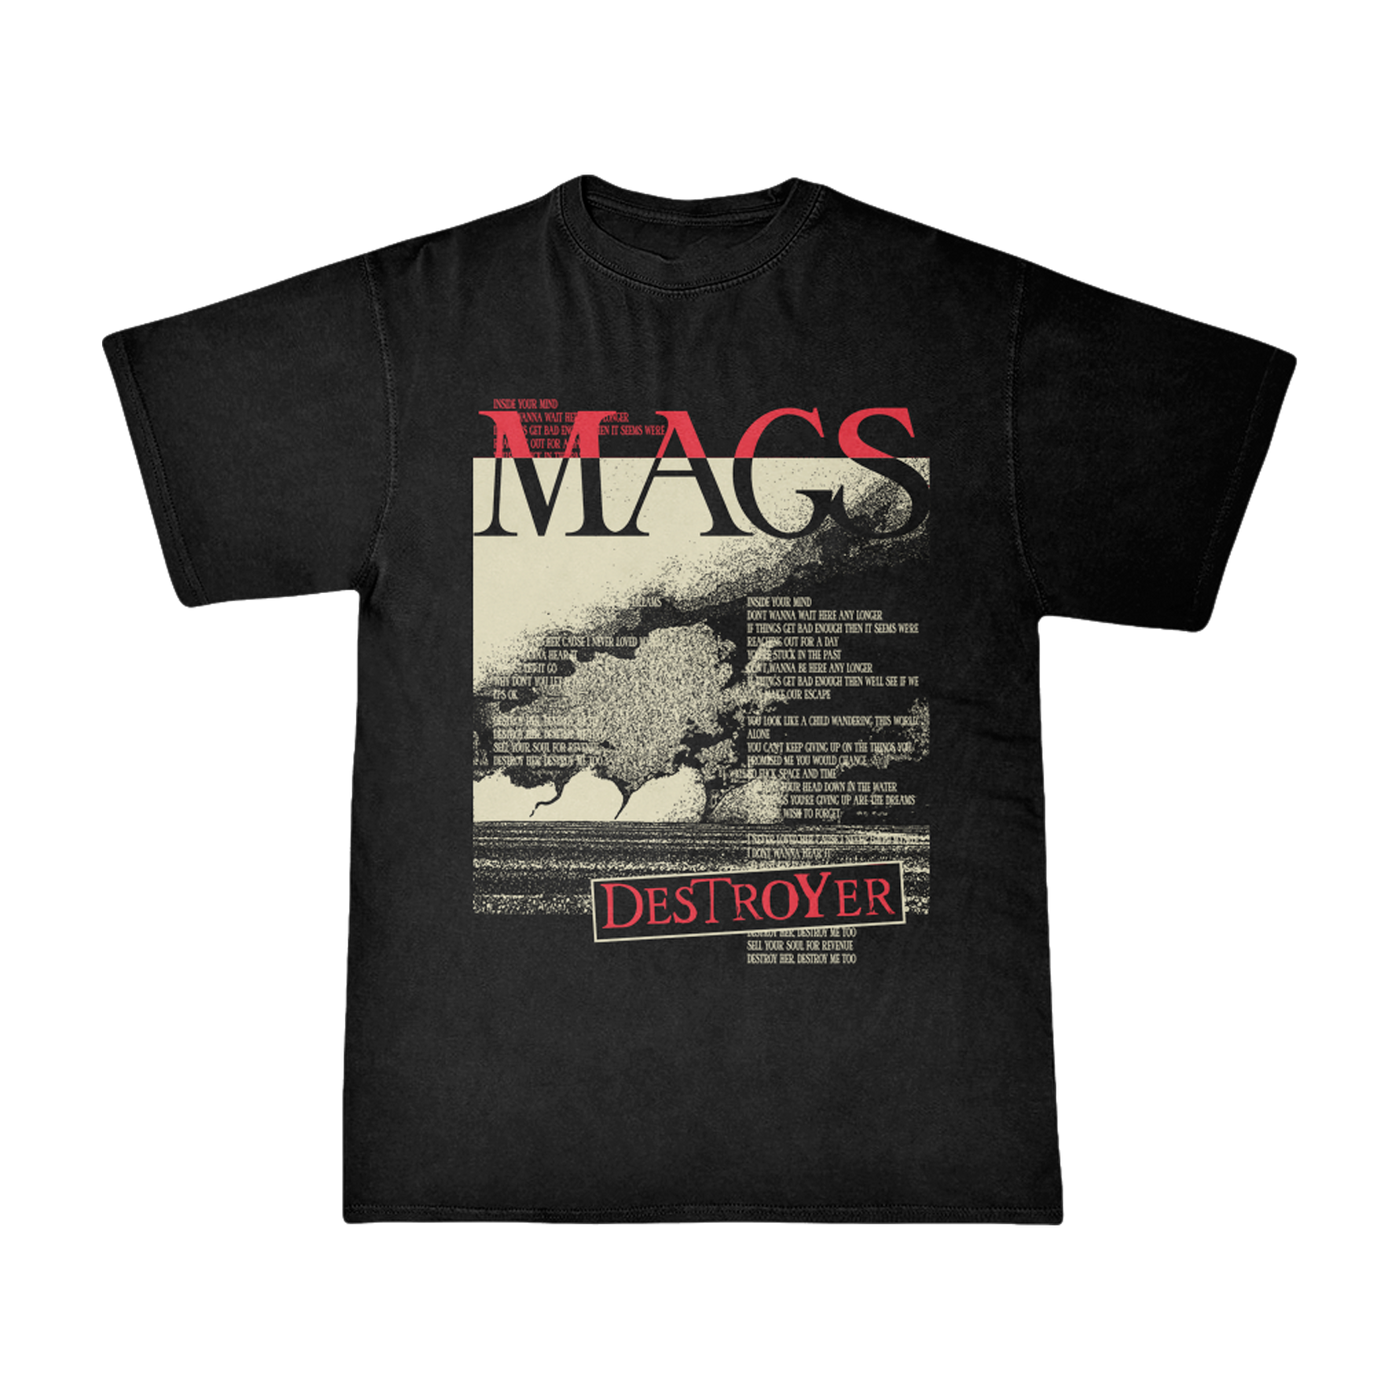 M.A.G.S. - Destroyer Shirt